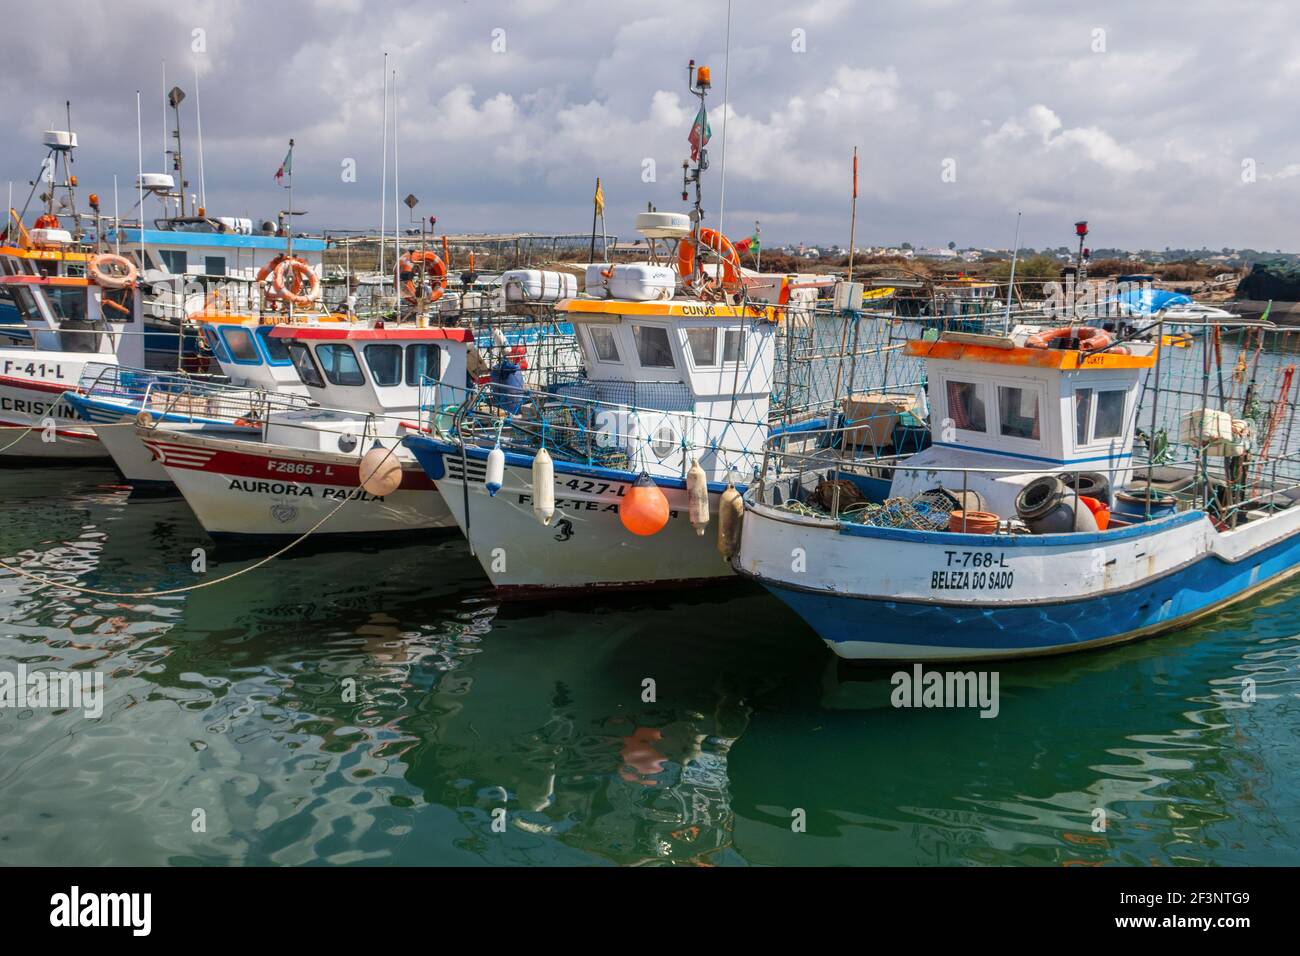 Bateaux de pêche dans le port de Fuzeta, Algarve, Portugal Banque D'Images